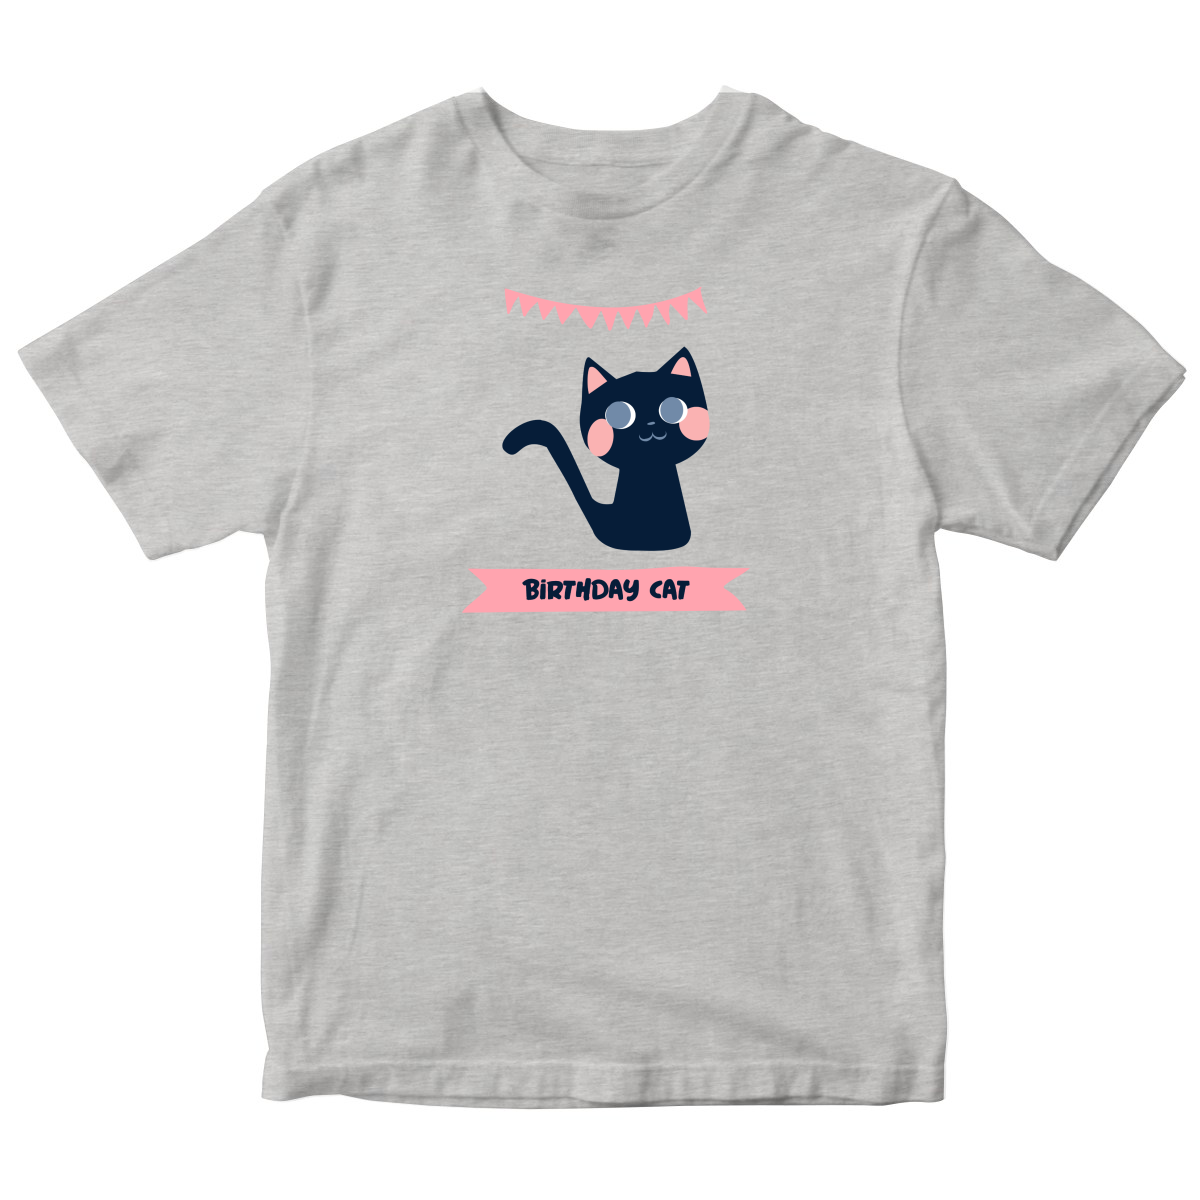 Birthday Cat Toddler T-shirt | Gray